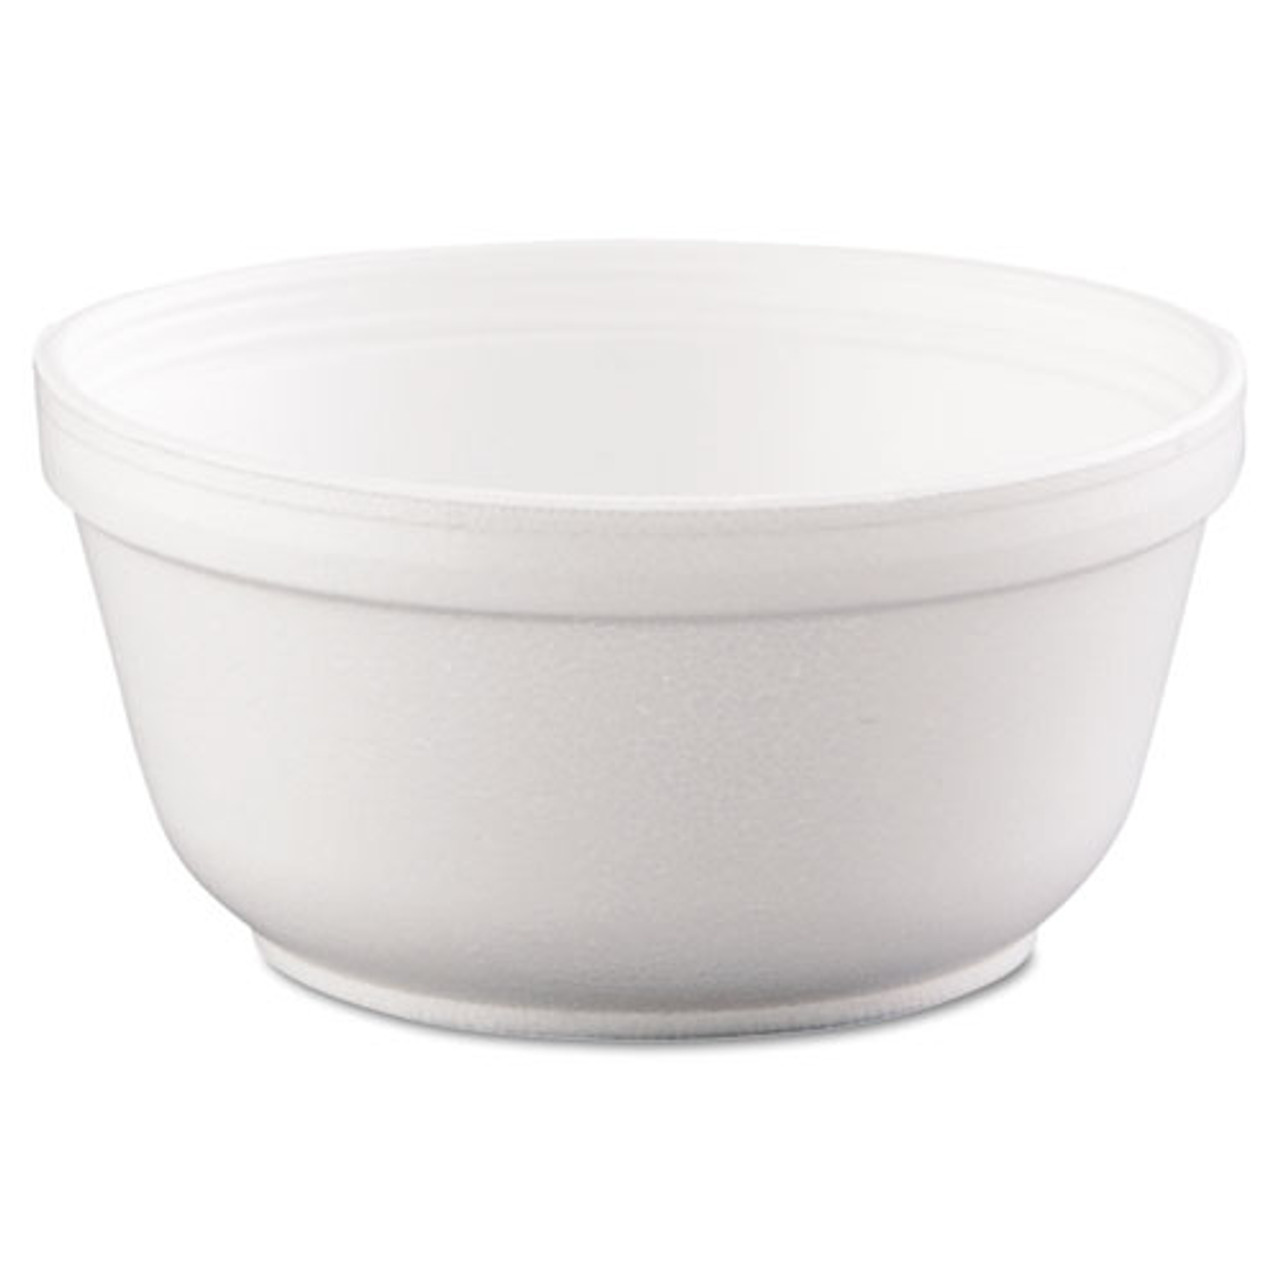 12 oz White Foam Bowls